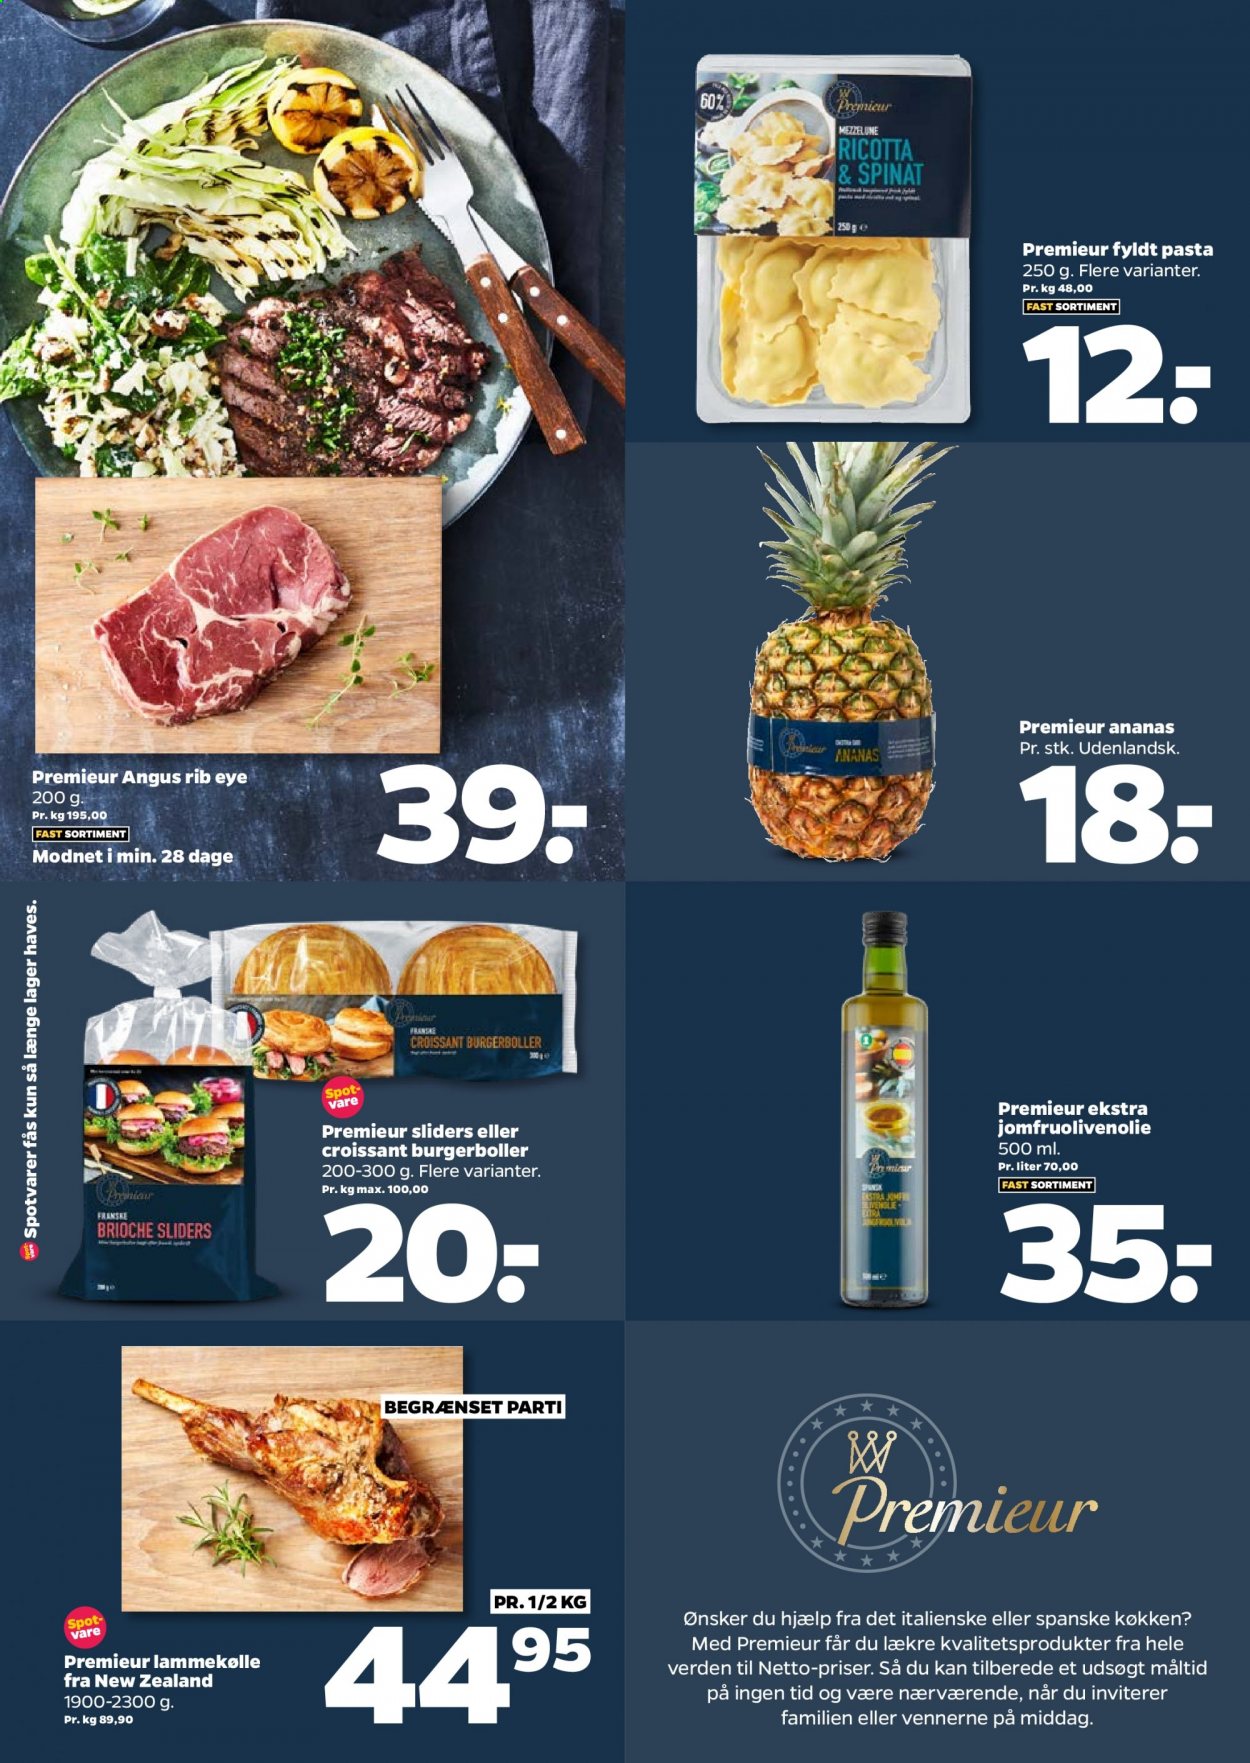 thumbnail - Netto tilbud  - 26.6.2021 - 2.7.2021 - tilbudsprodukter - ananas, spinat, burgerboller, croissant, lammekølle, ricotta, pasta. Side 10.